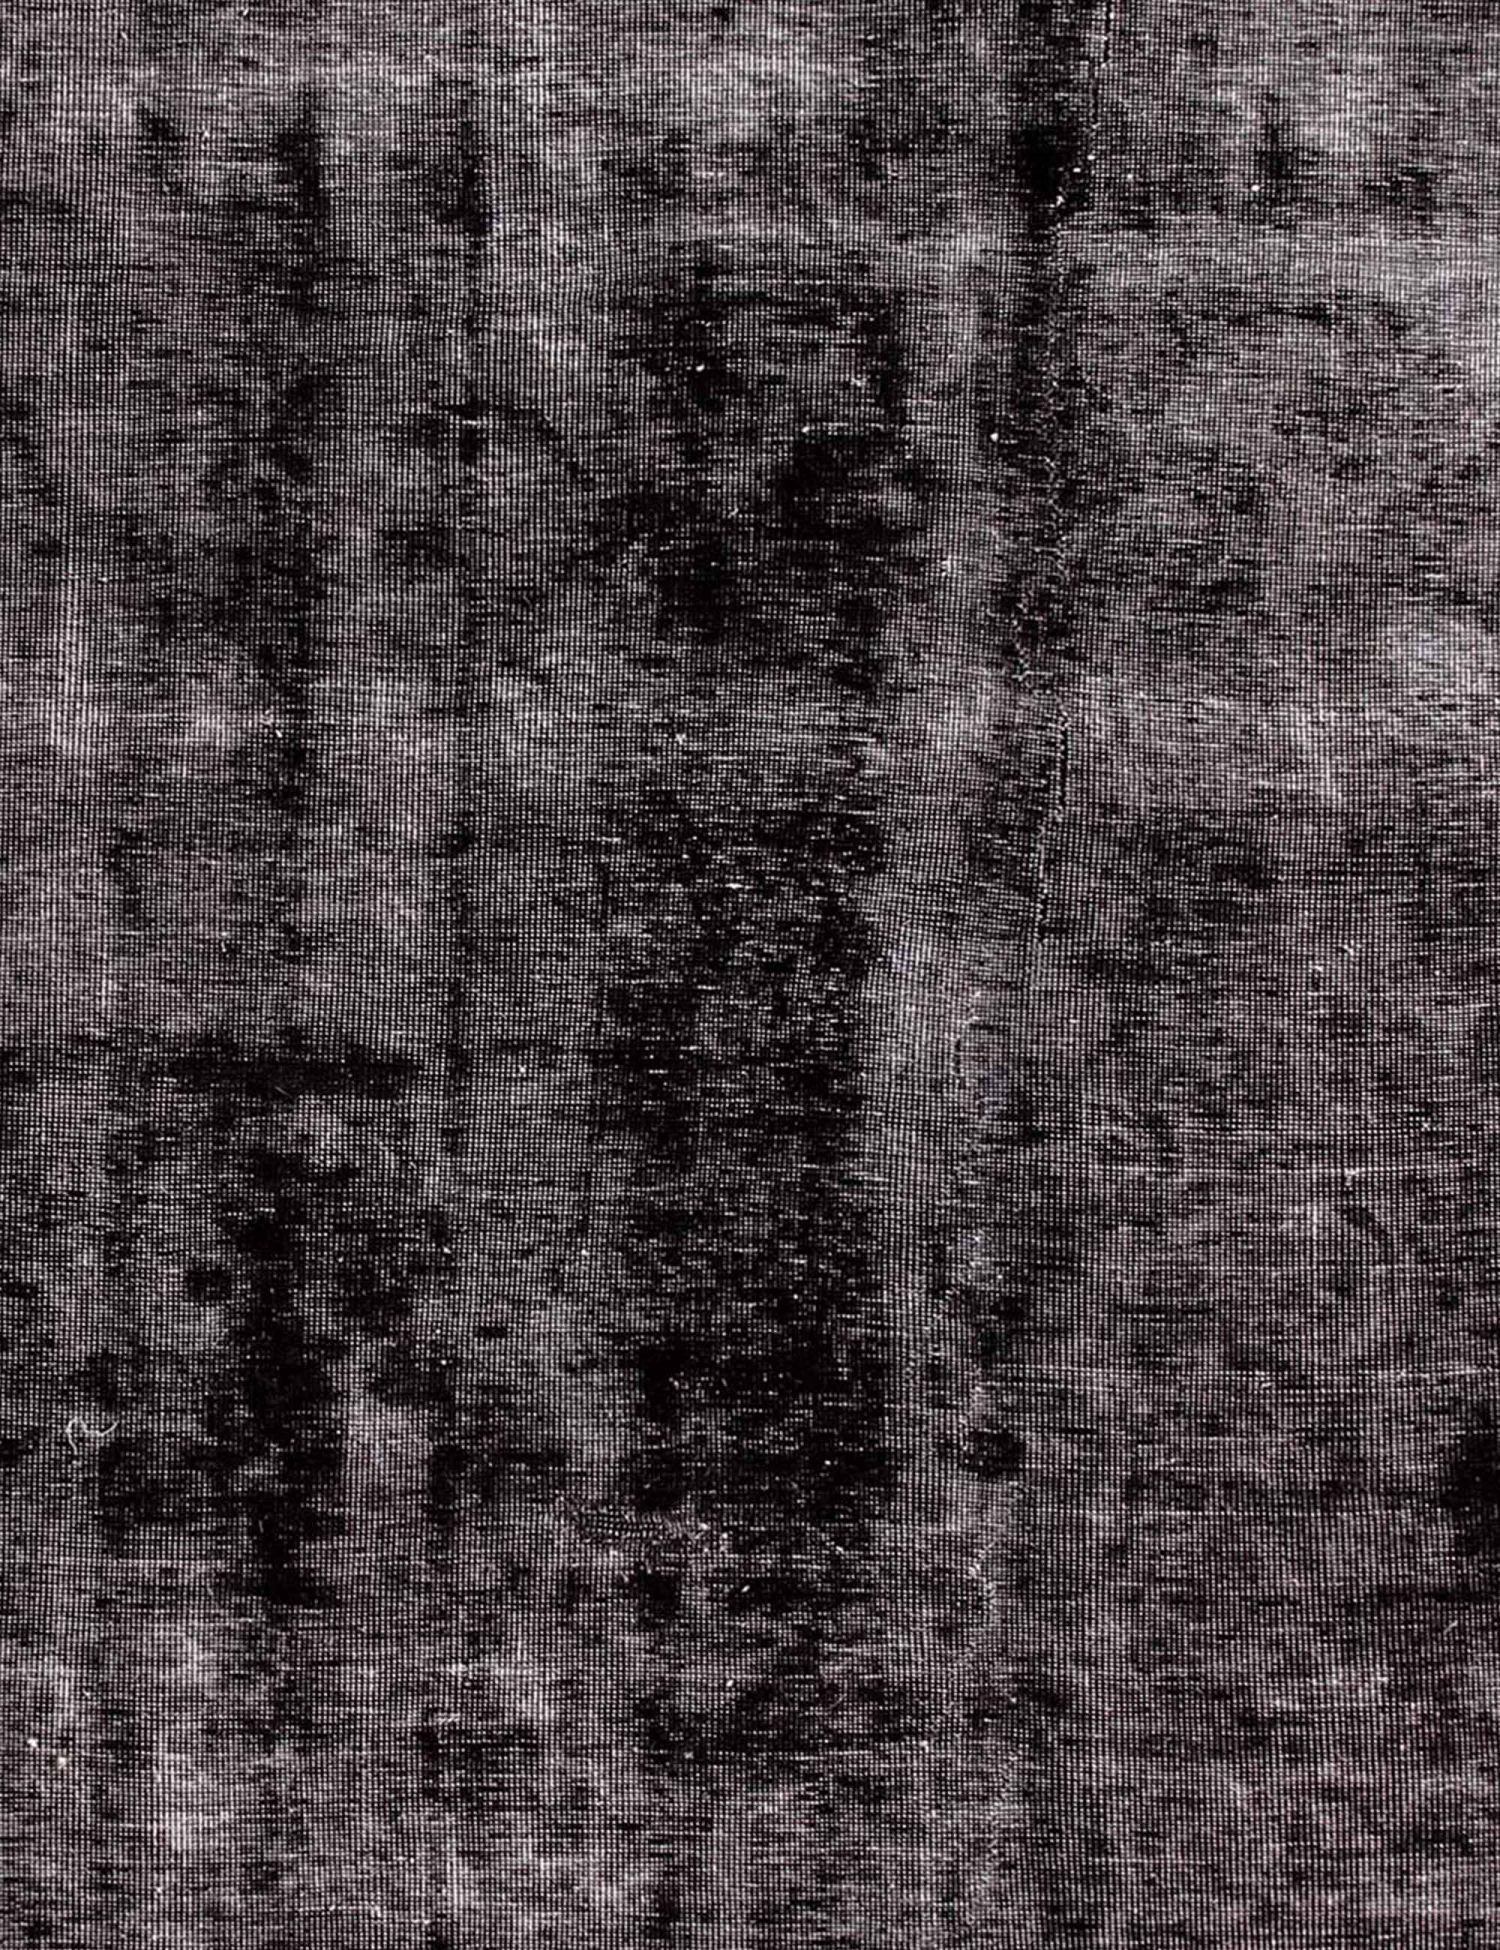 Persischer Vintage Teppich  schwarz <br/>207 x 207 cm